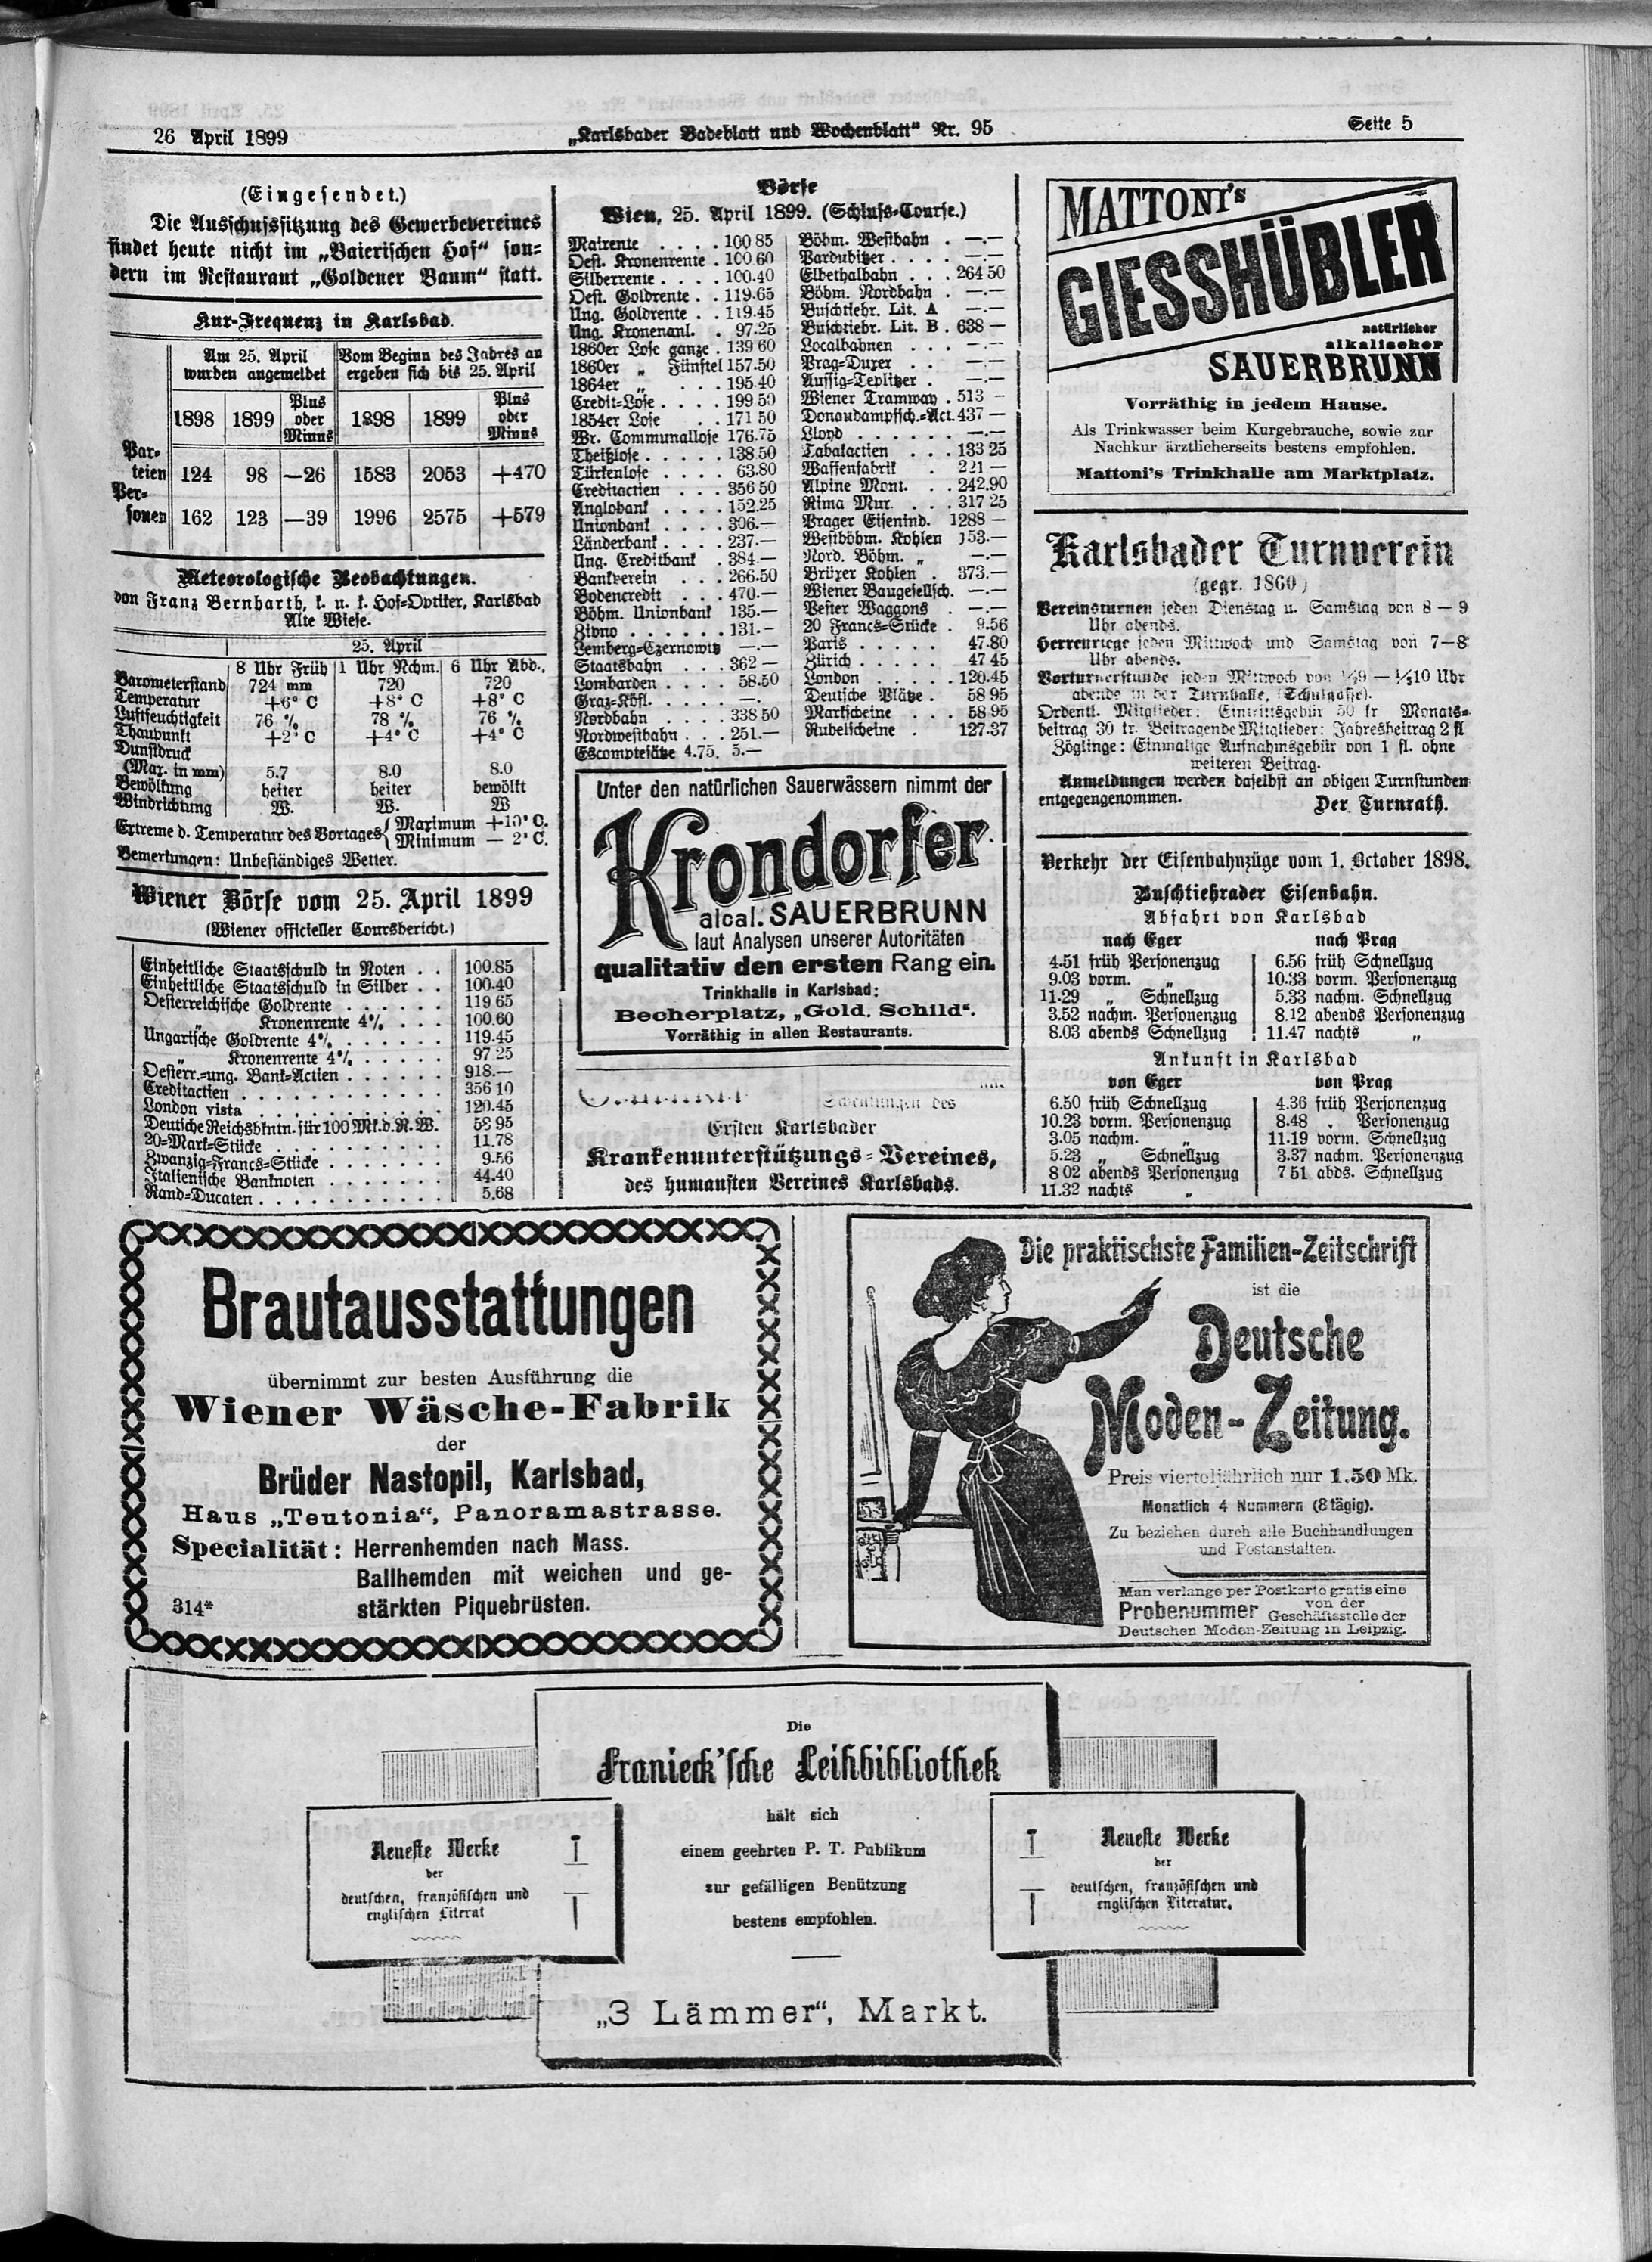 5. karlsbader-badeblatt-1899-04-26-n95_4355